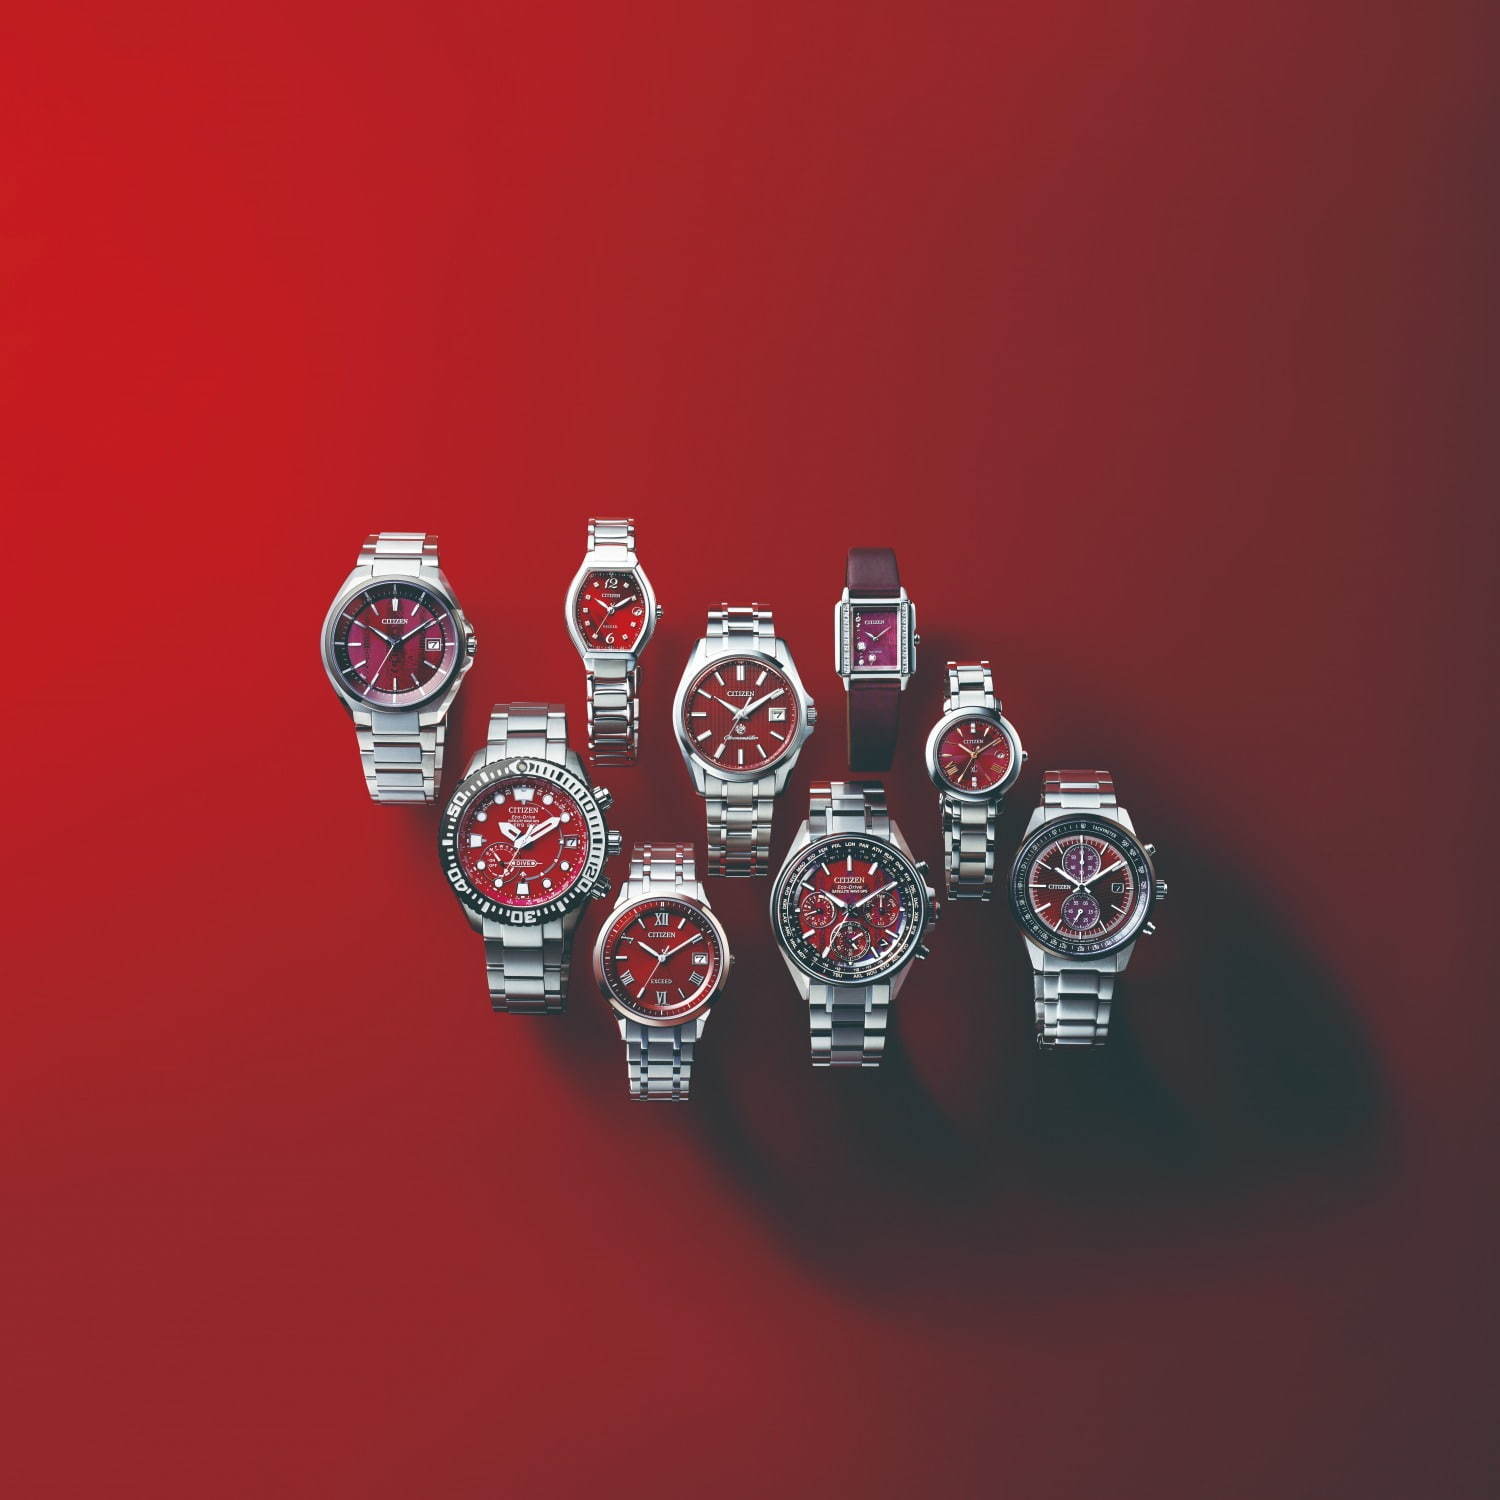 シチズン 情熱の赤 テーマの新作腕時計9型 赤い文字板に 星 や高層ビル群などデザイン ファッションプレス